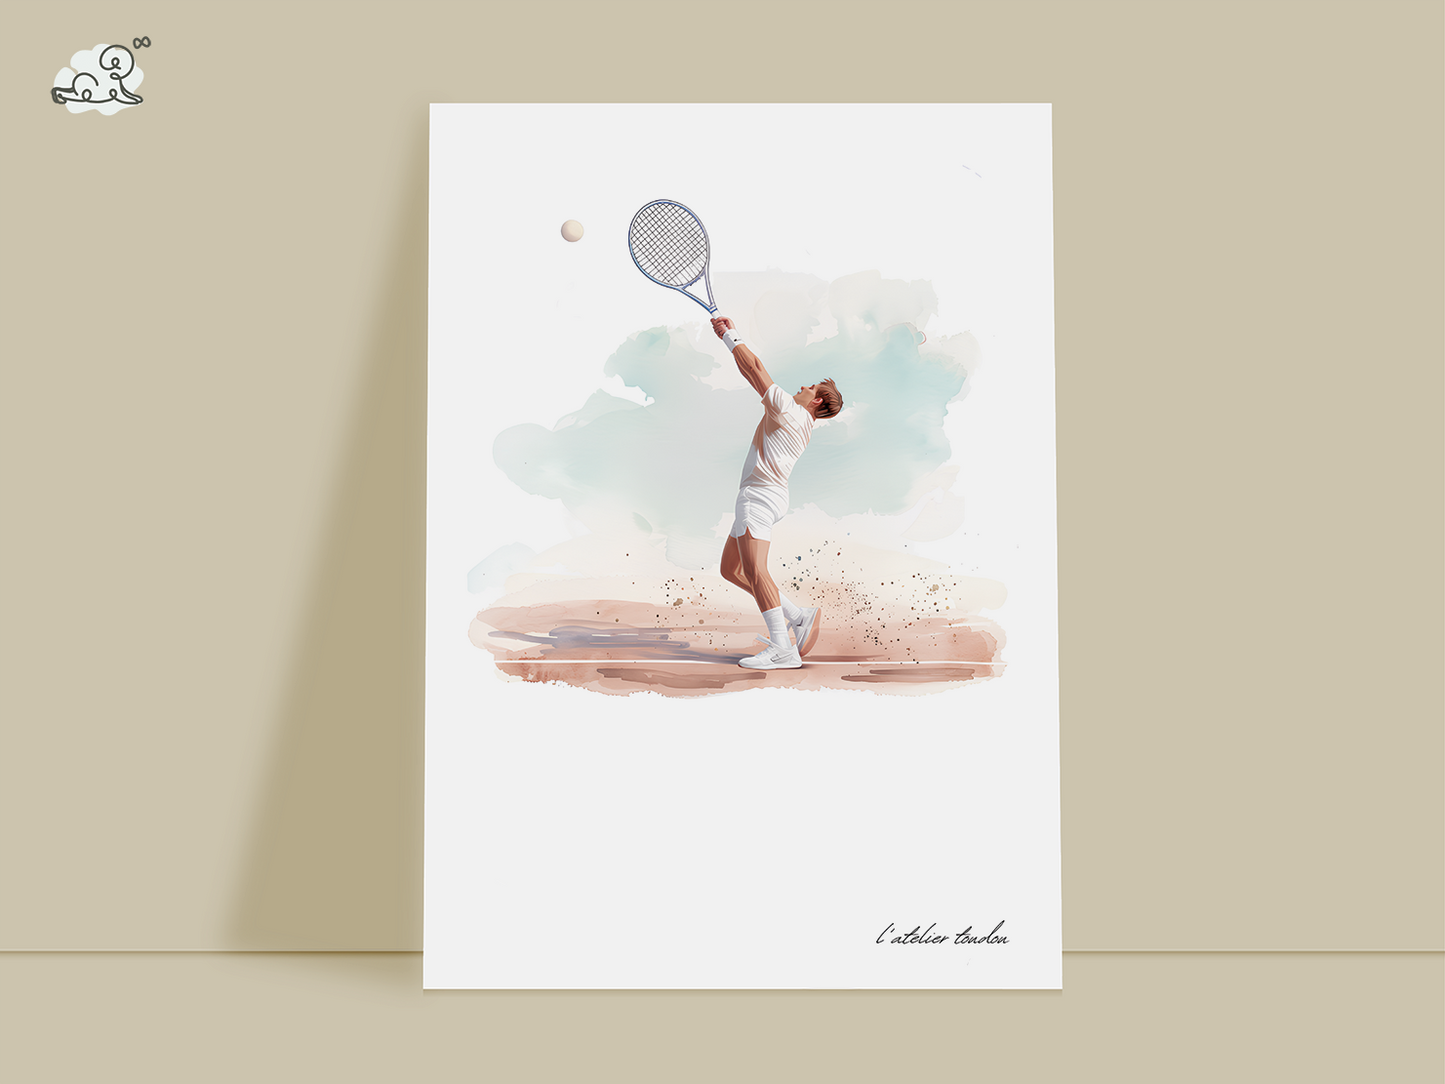 Décoration murale homme tennis - Thème passion